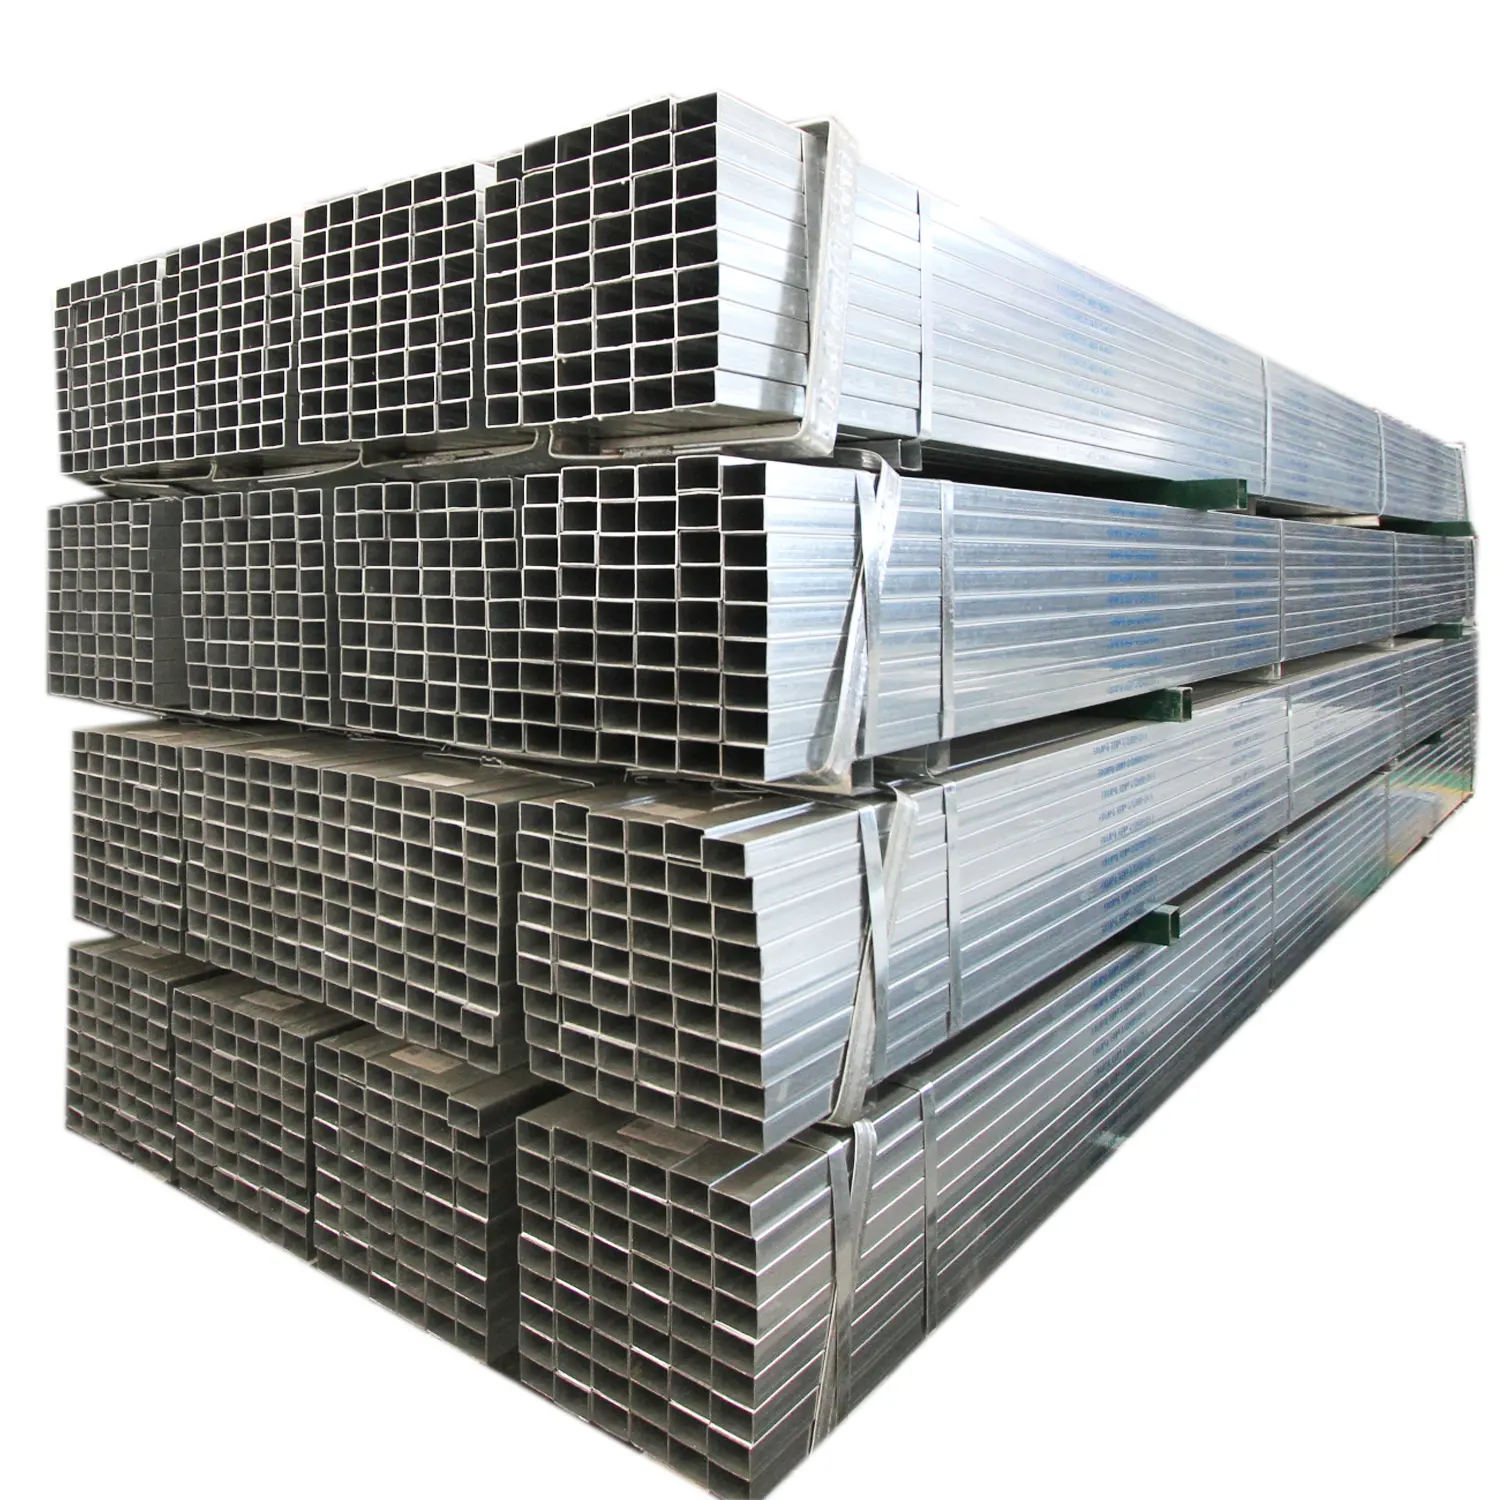 Kualitas tinggi baja tergalvanis persegi dan persegi panjang pipa baja GI ukuran standar tabung baja galvanis